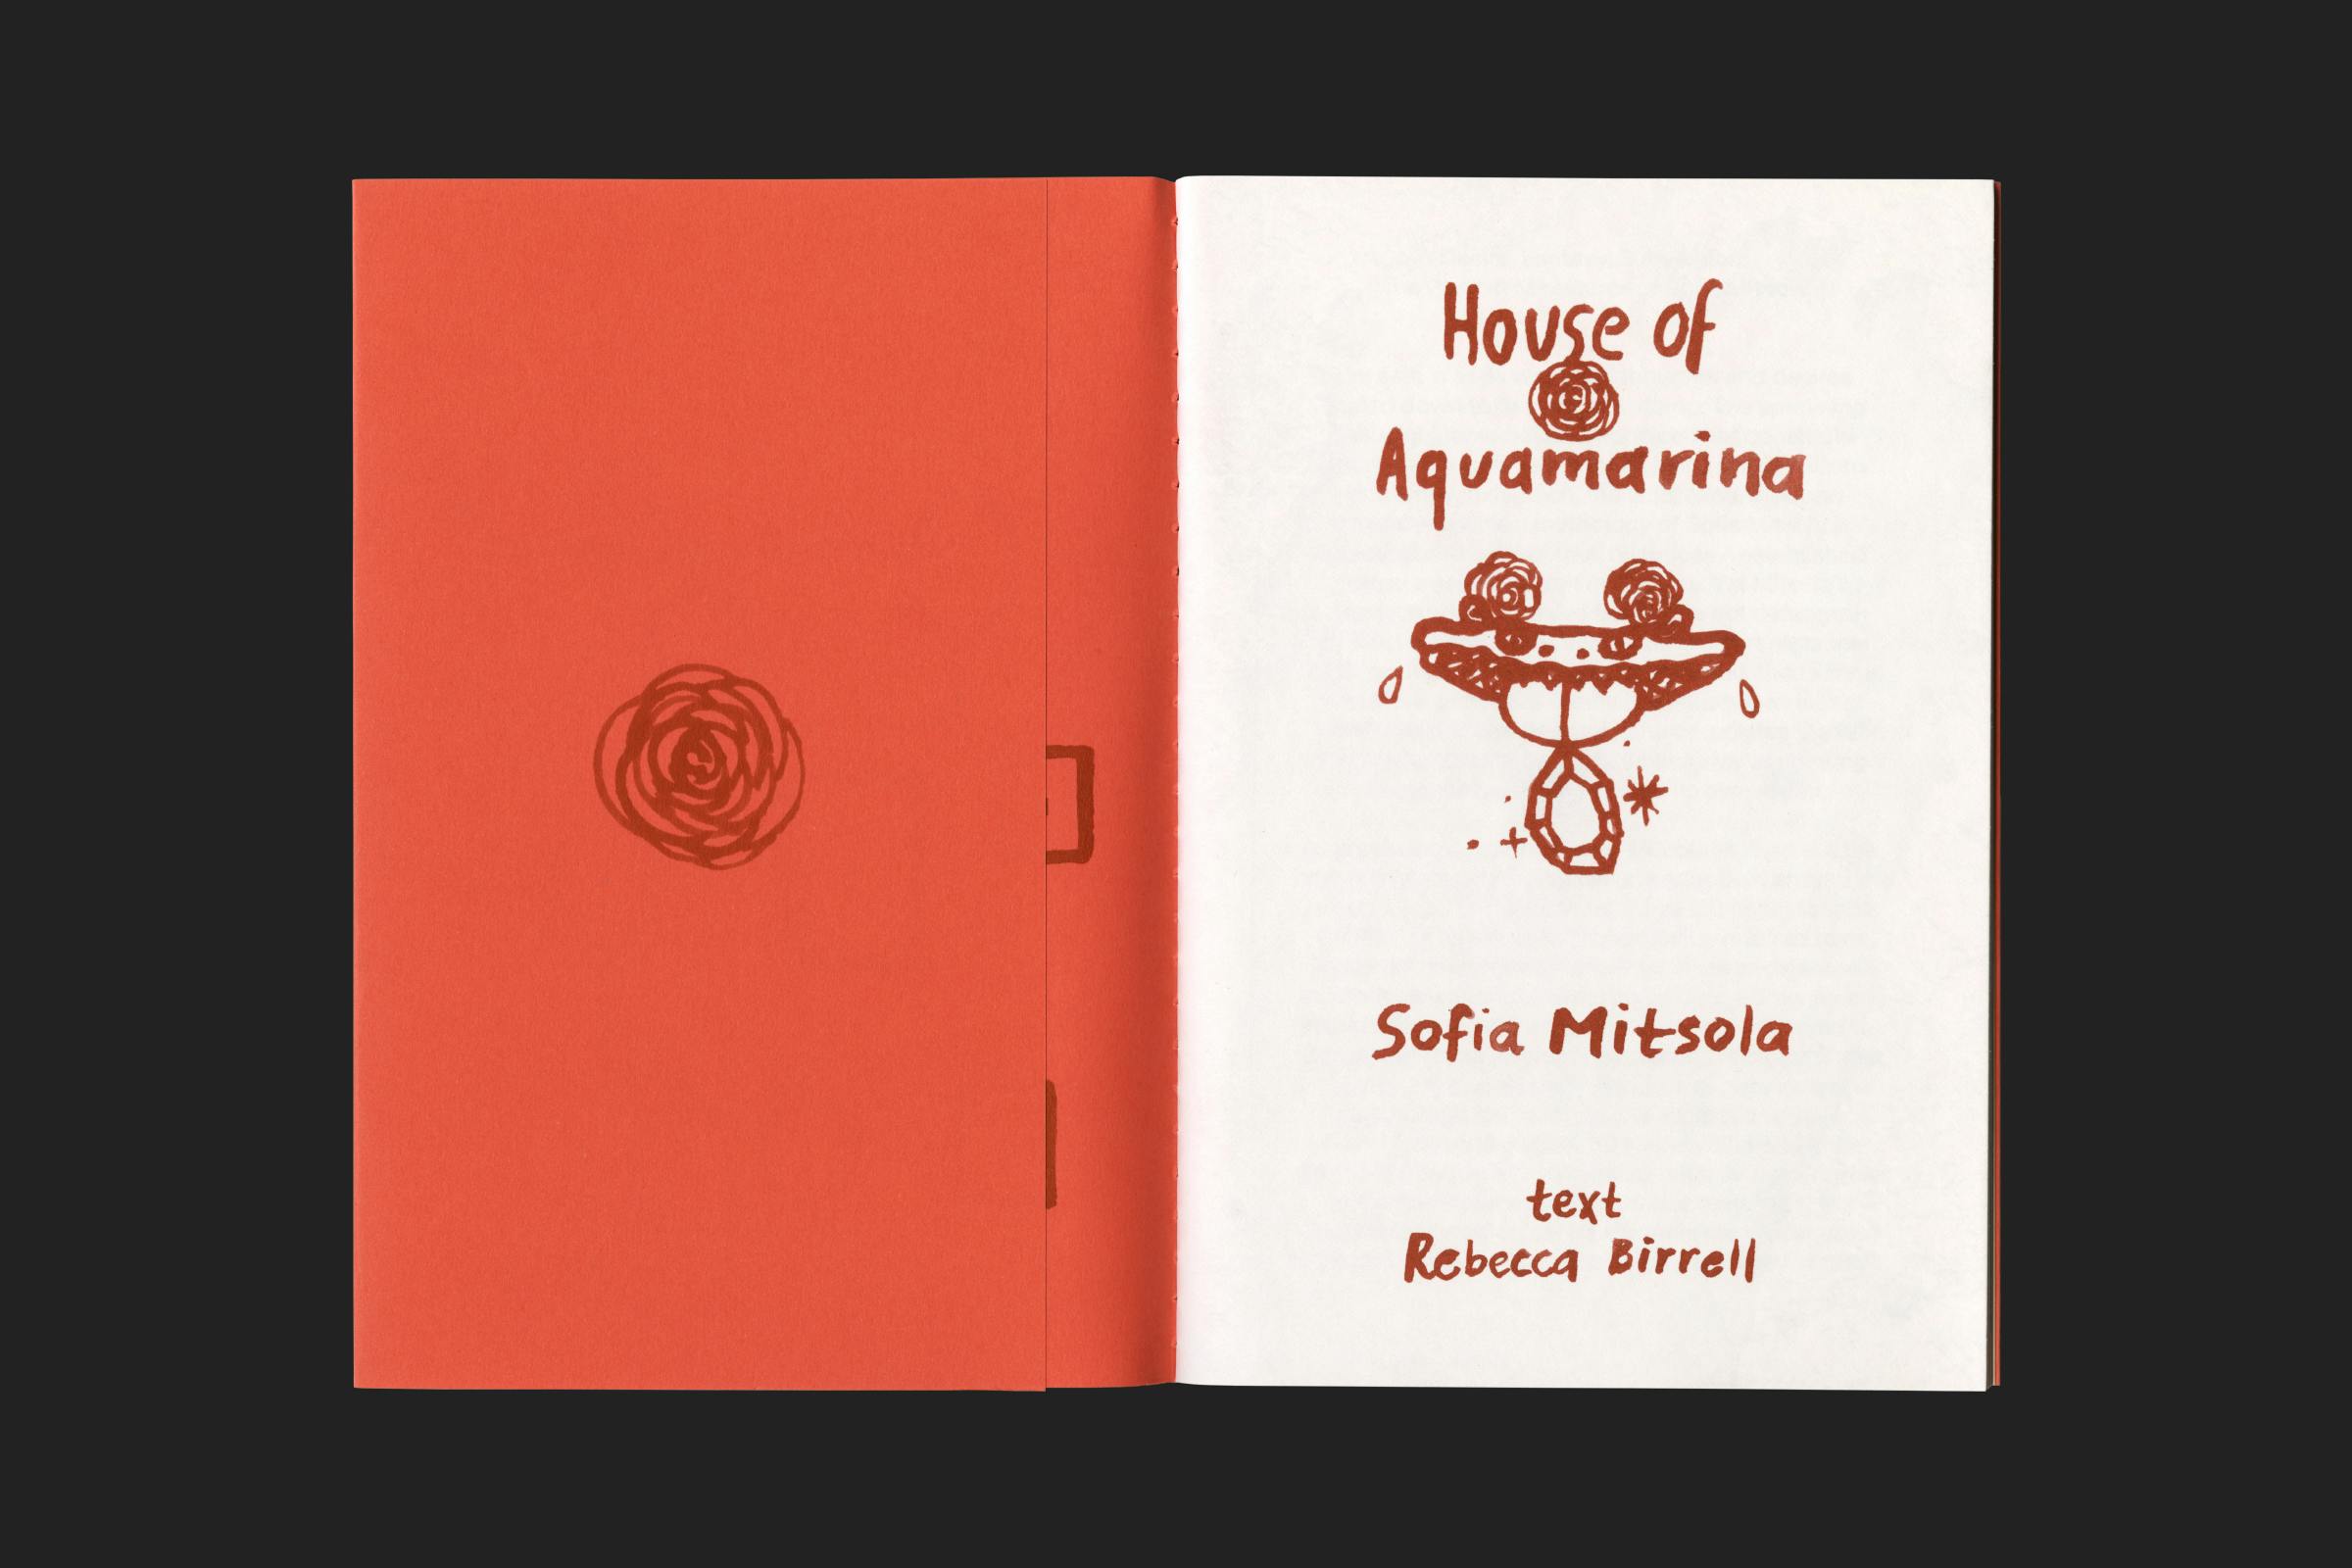 Sofia Mitsola, House of Aquamarina, Pilar Corrias, Design by Wolfe Hall